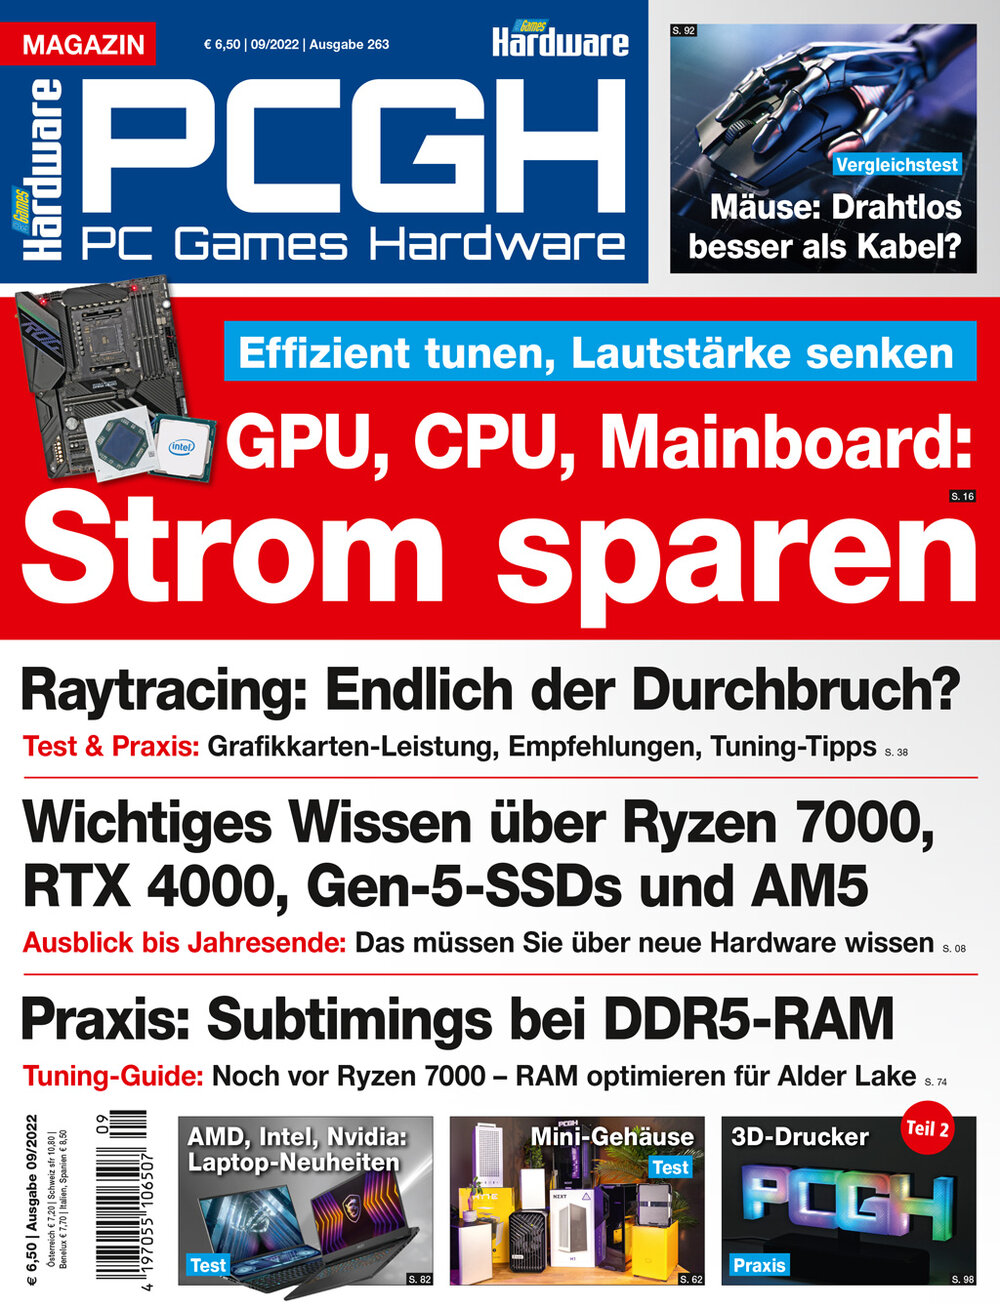 PCGH Magazin 09/2022